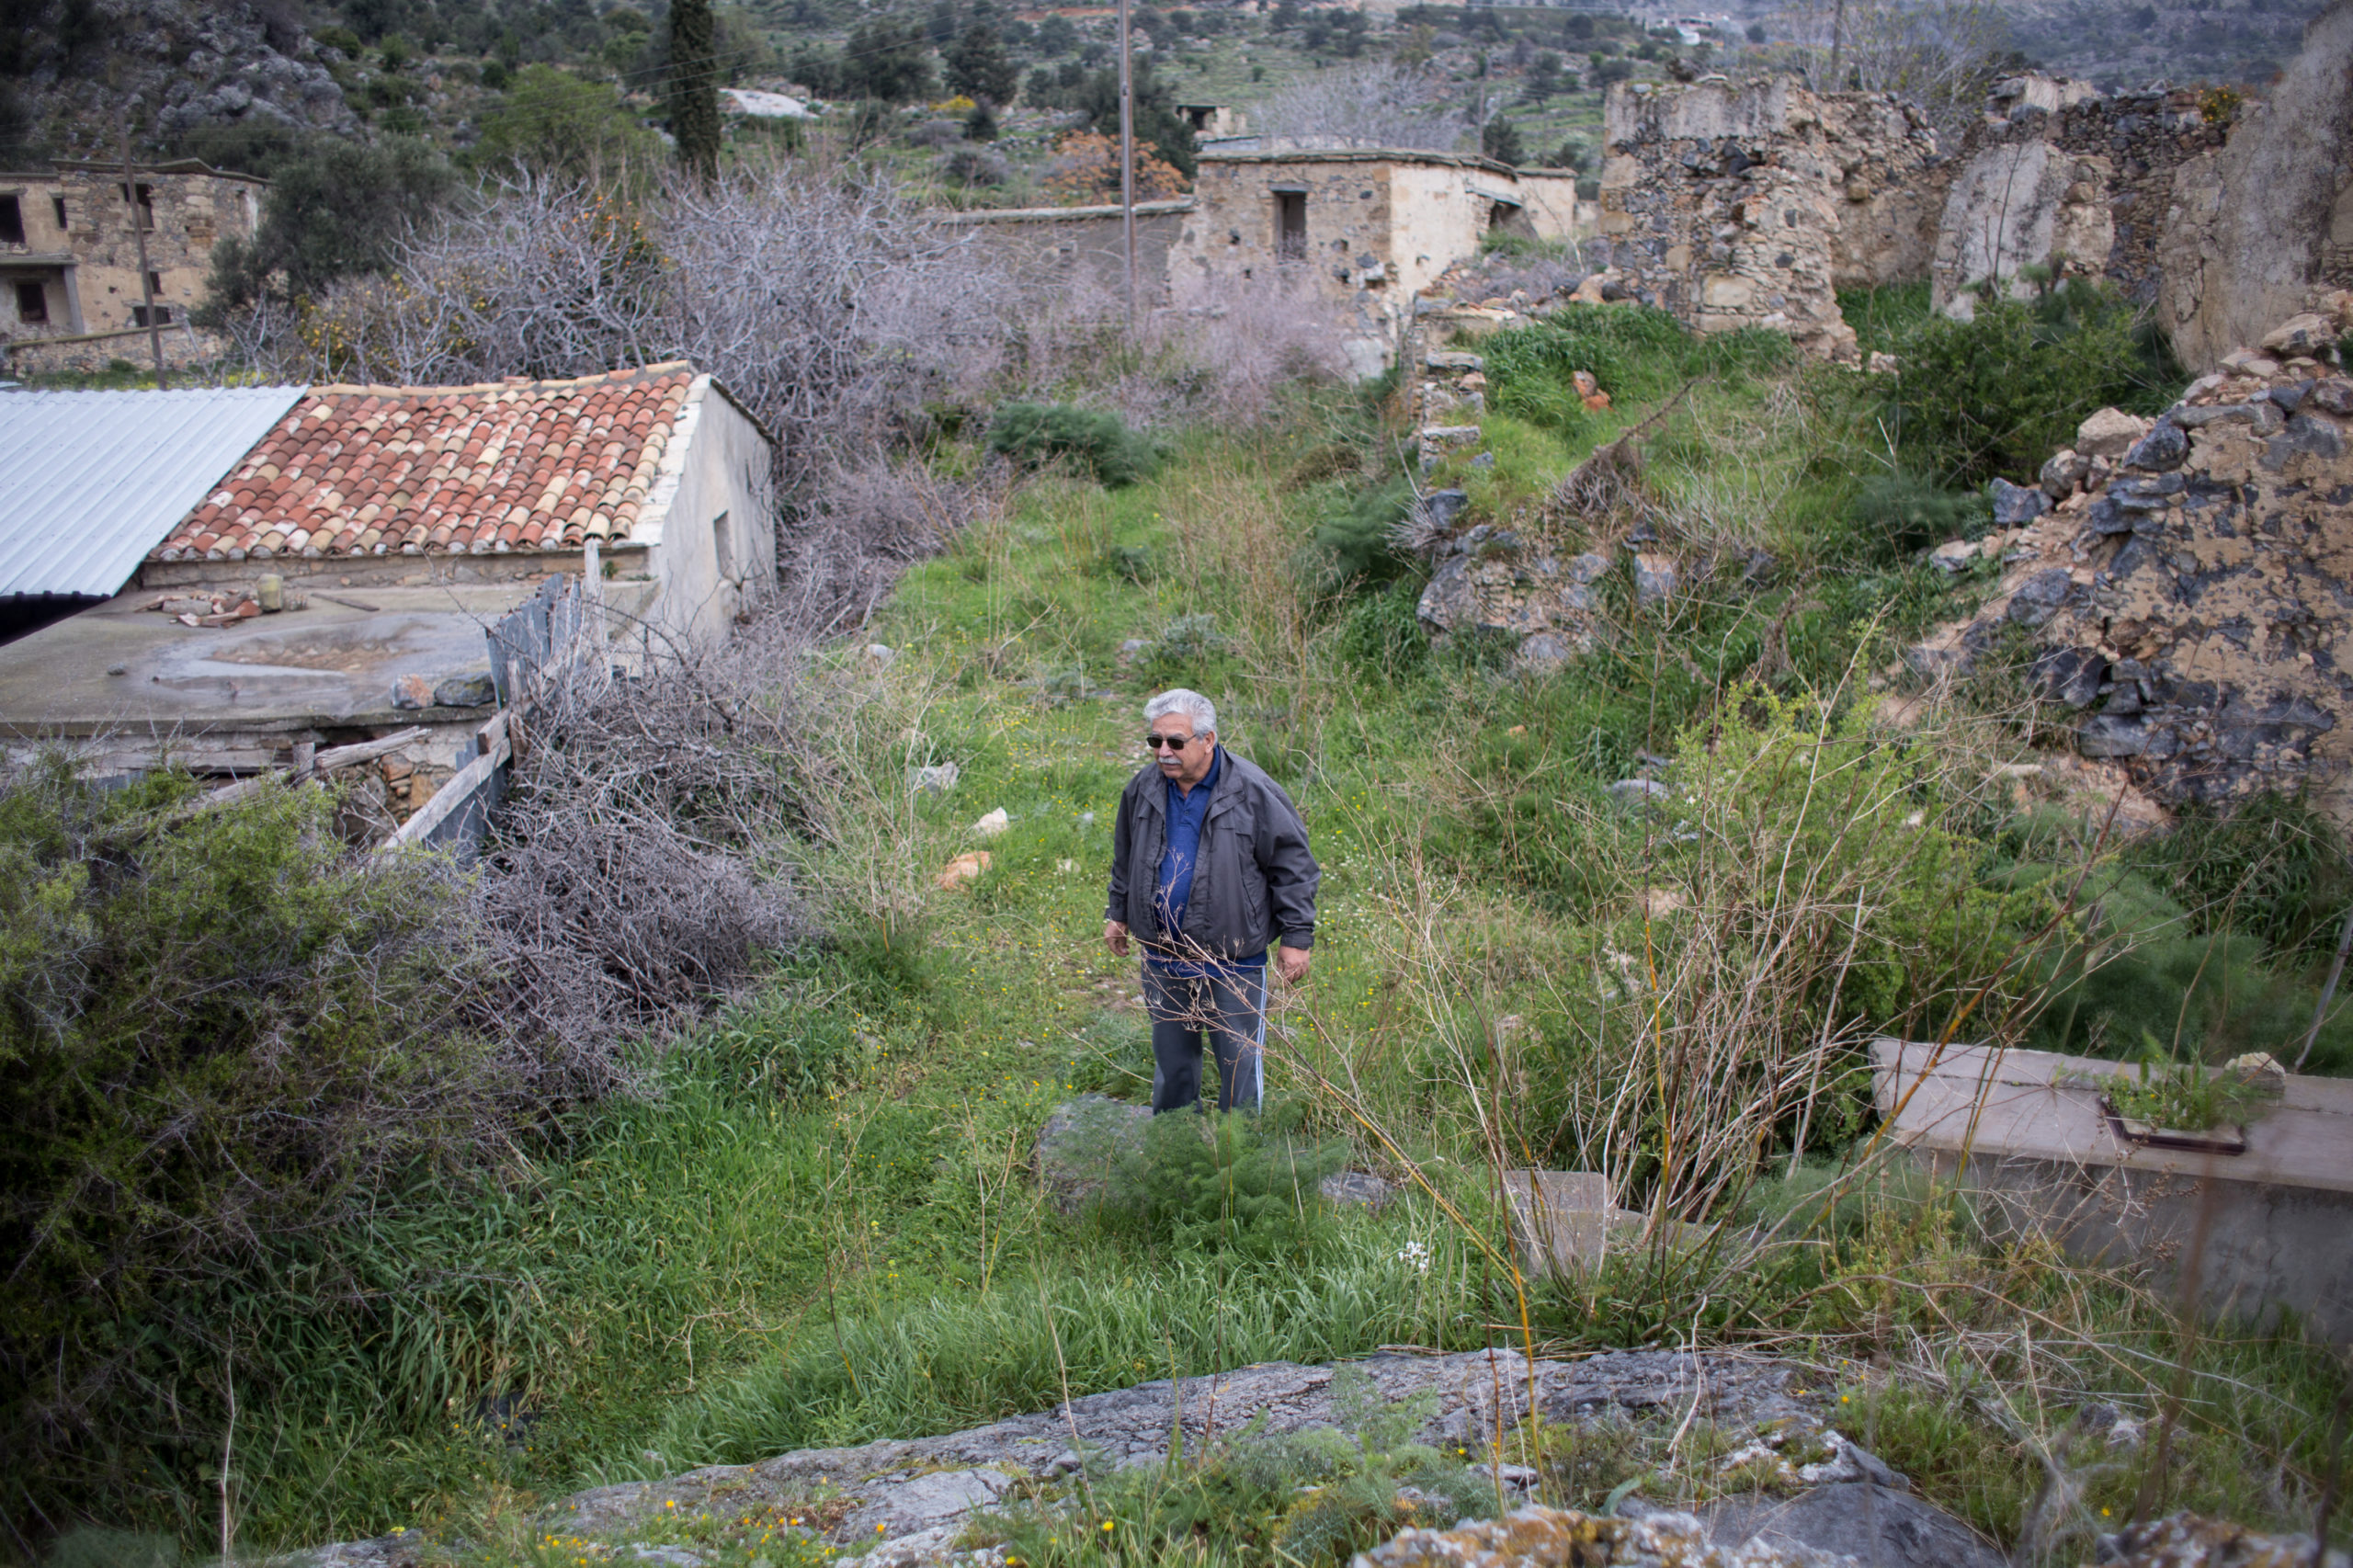 42 ans après avoir quitté sa maison, Elias rentre chez lui à Syskiipos, dans la zone occupée au nord. Sa maison est en ruine, mais la porte n'est fermée que par ces quelques planches.